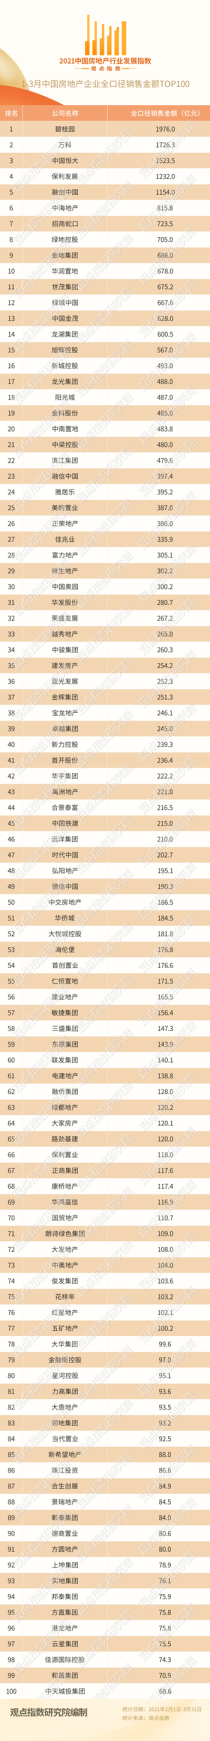 2021年1-3月中国房地产企业销售TOP100·观点月度指数